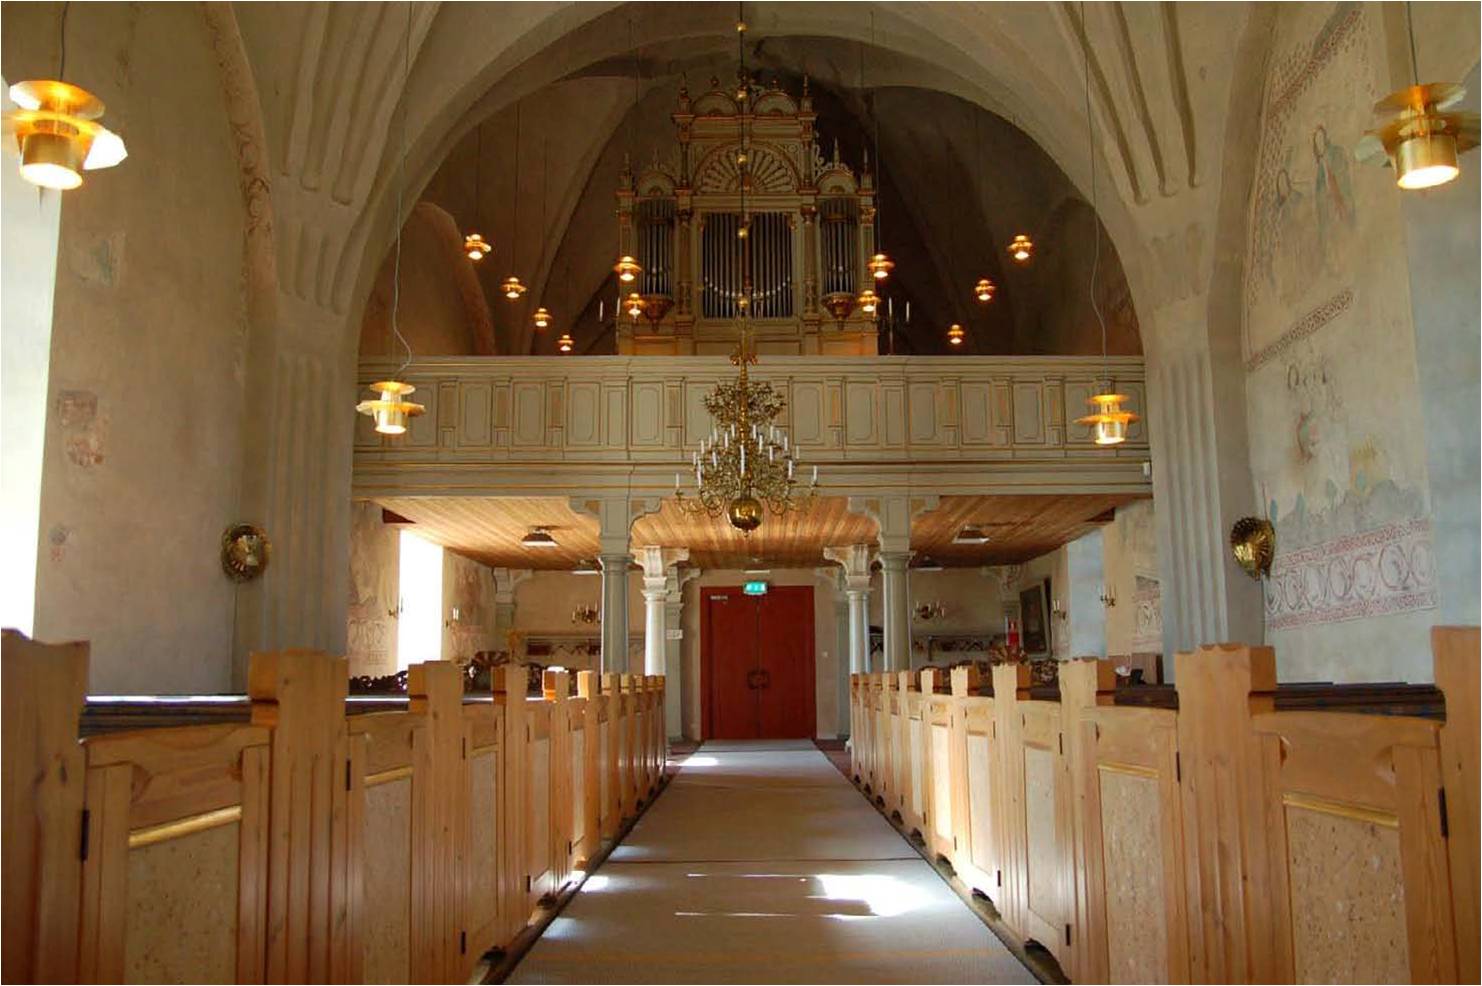 1901-02-års renovering var omfattande men togs till stor del bort 1951-56. Kvar blev dock läktaren och orgelfasaden, signerade stadsarkitekten i Gävle, E A Hedin. 